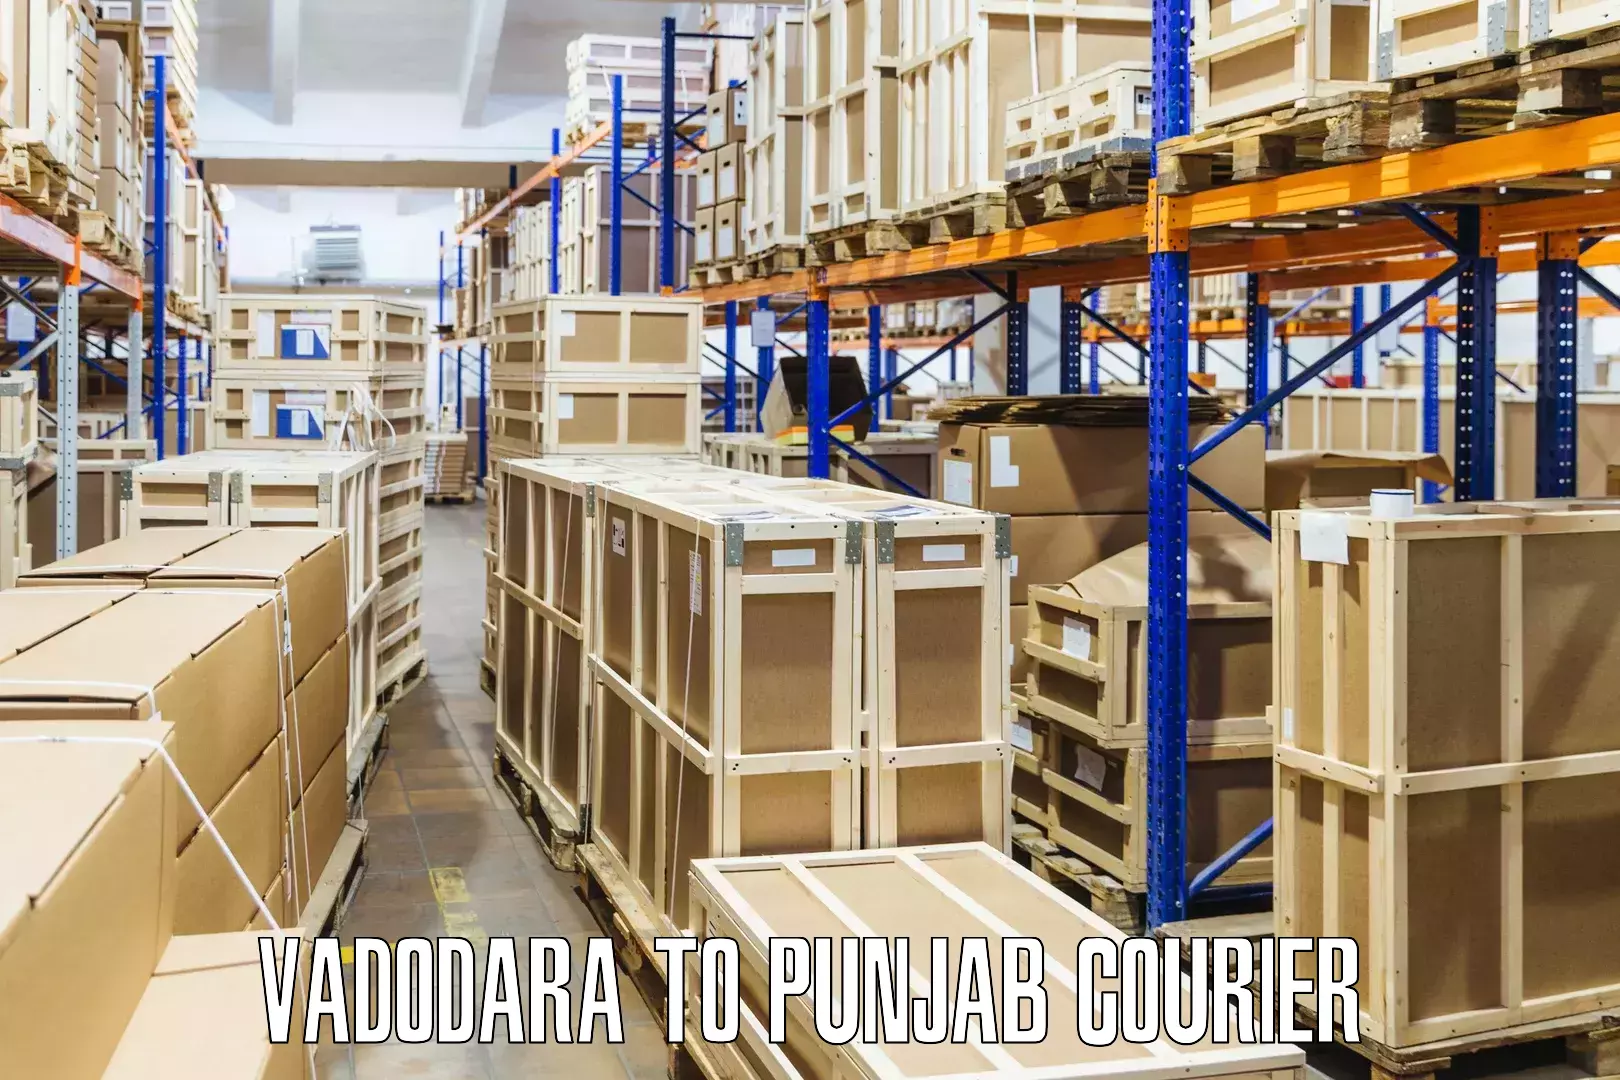 Cargo delivery service Vadodara to Punjab